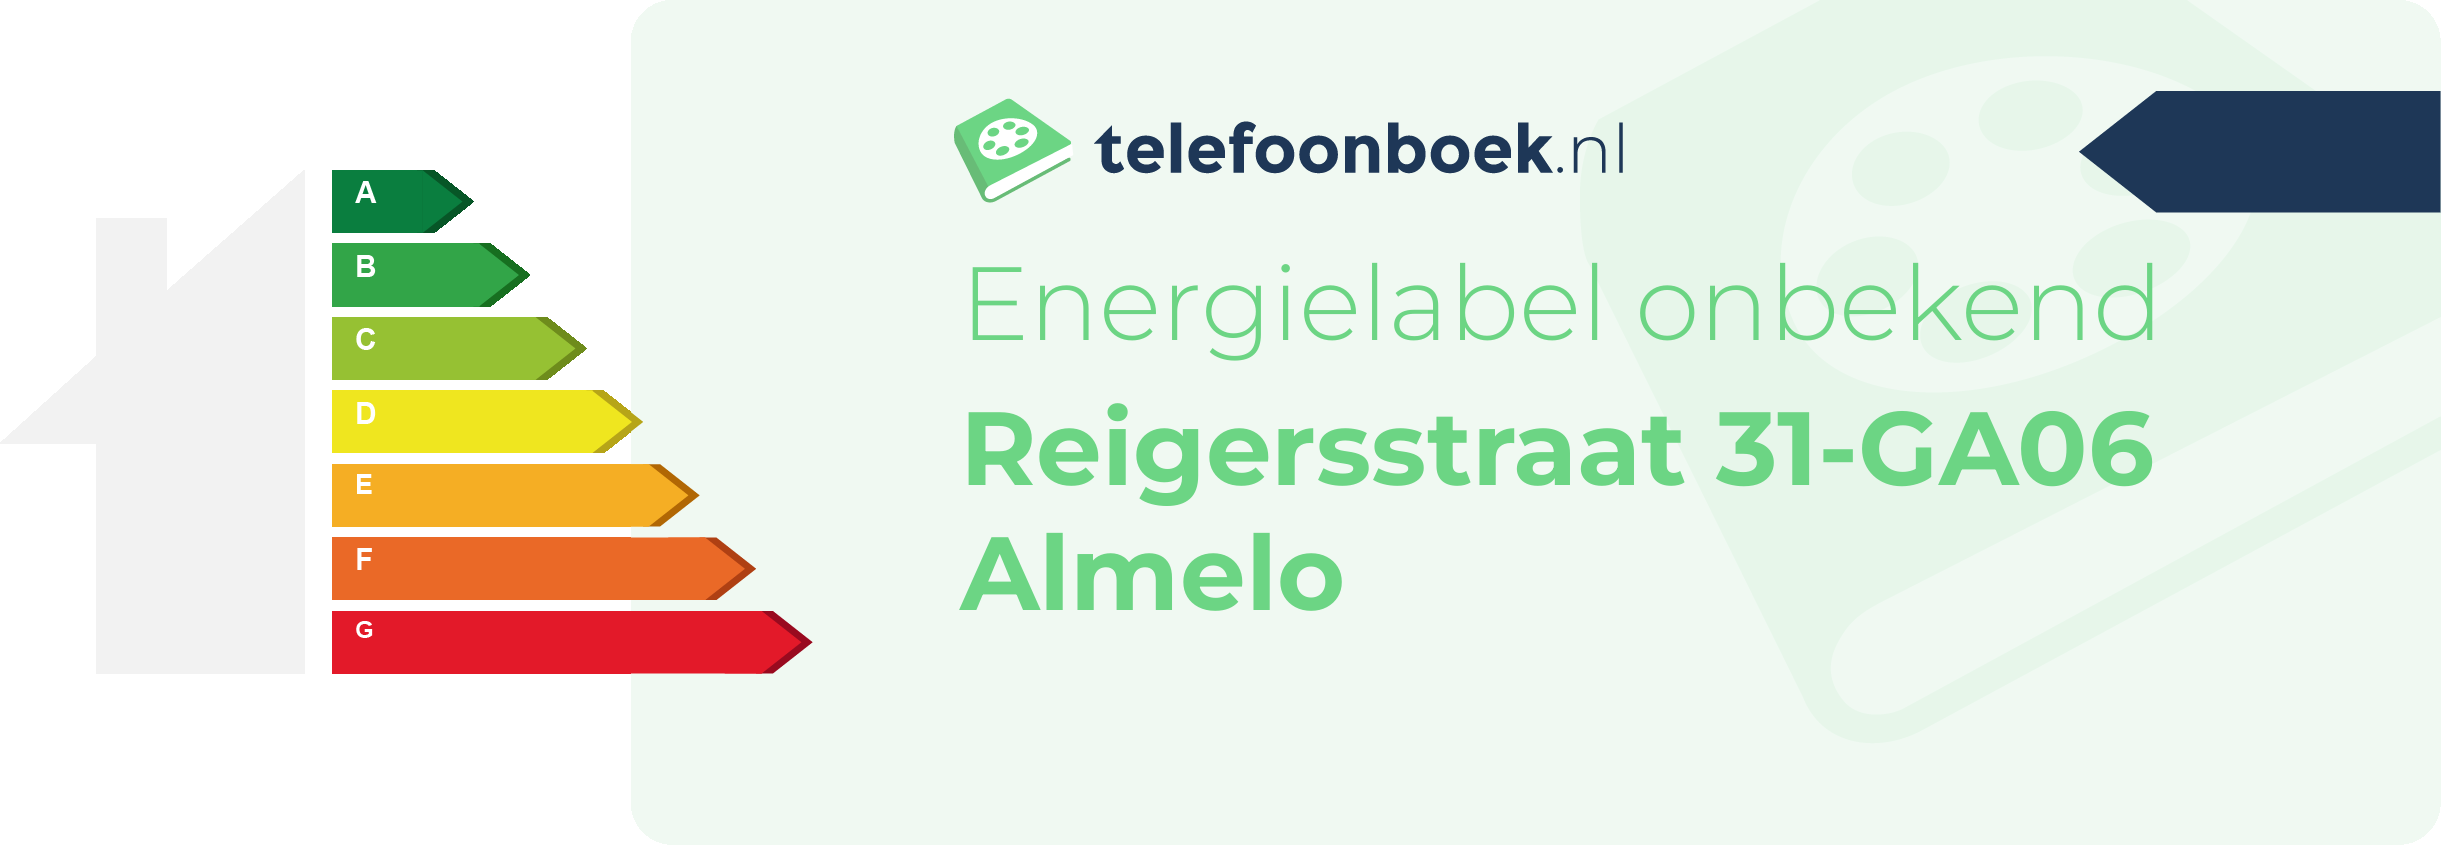 Energielabel Reigersstraat 31-GA06 Almelo